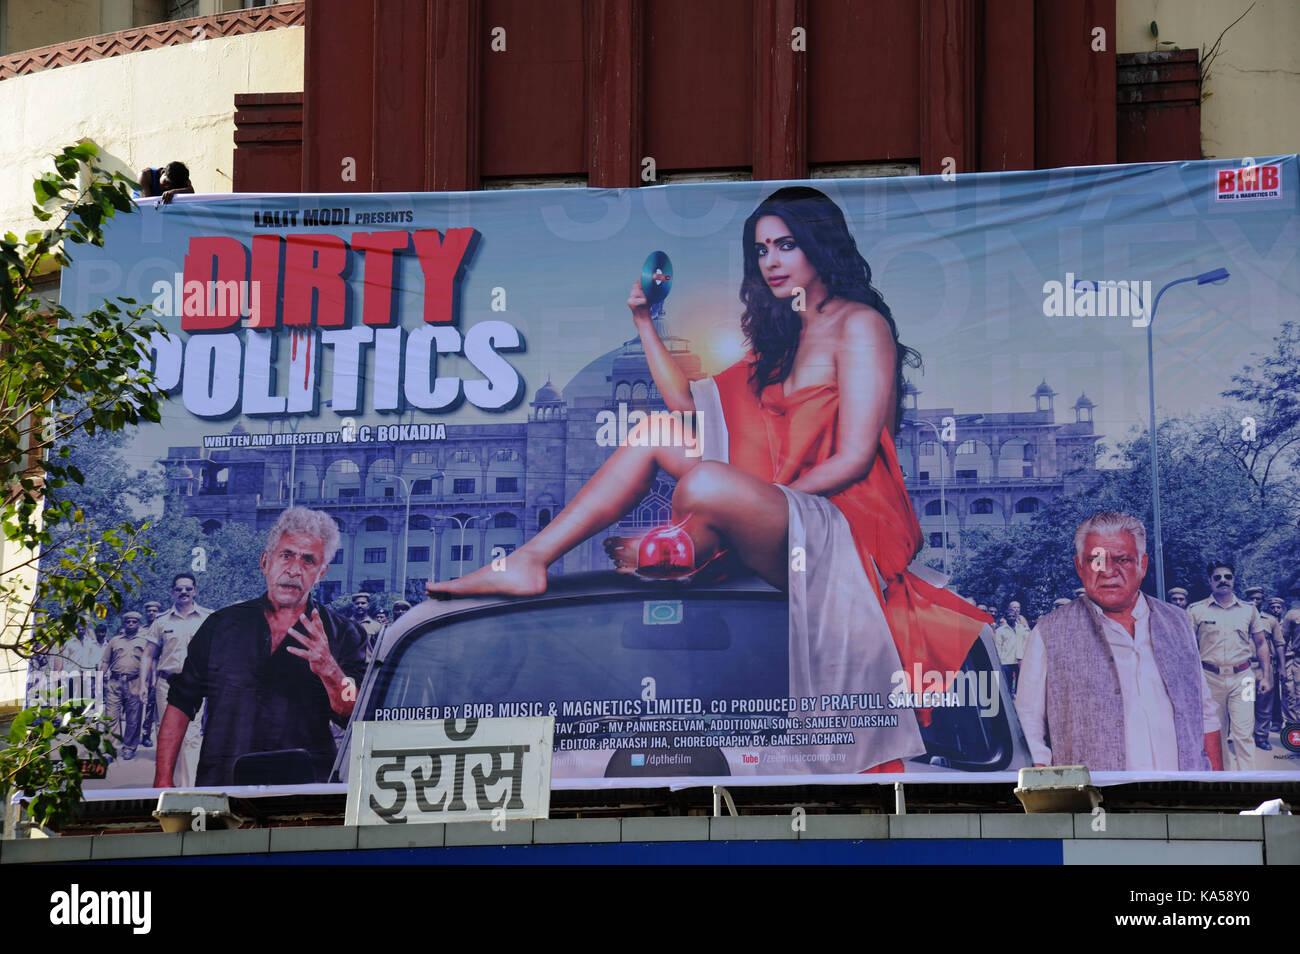 dirty politics bollywood hindi movies film poster eros cinema, mumbai, maharashtra, India, Asia- rmm 258795 Stock Photo